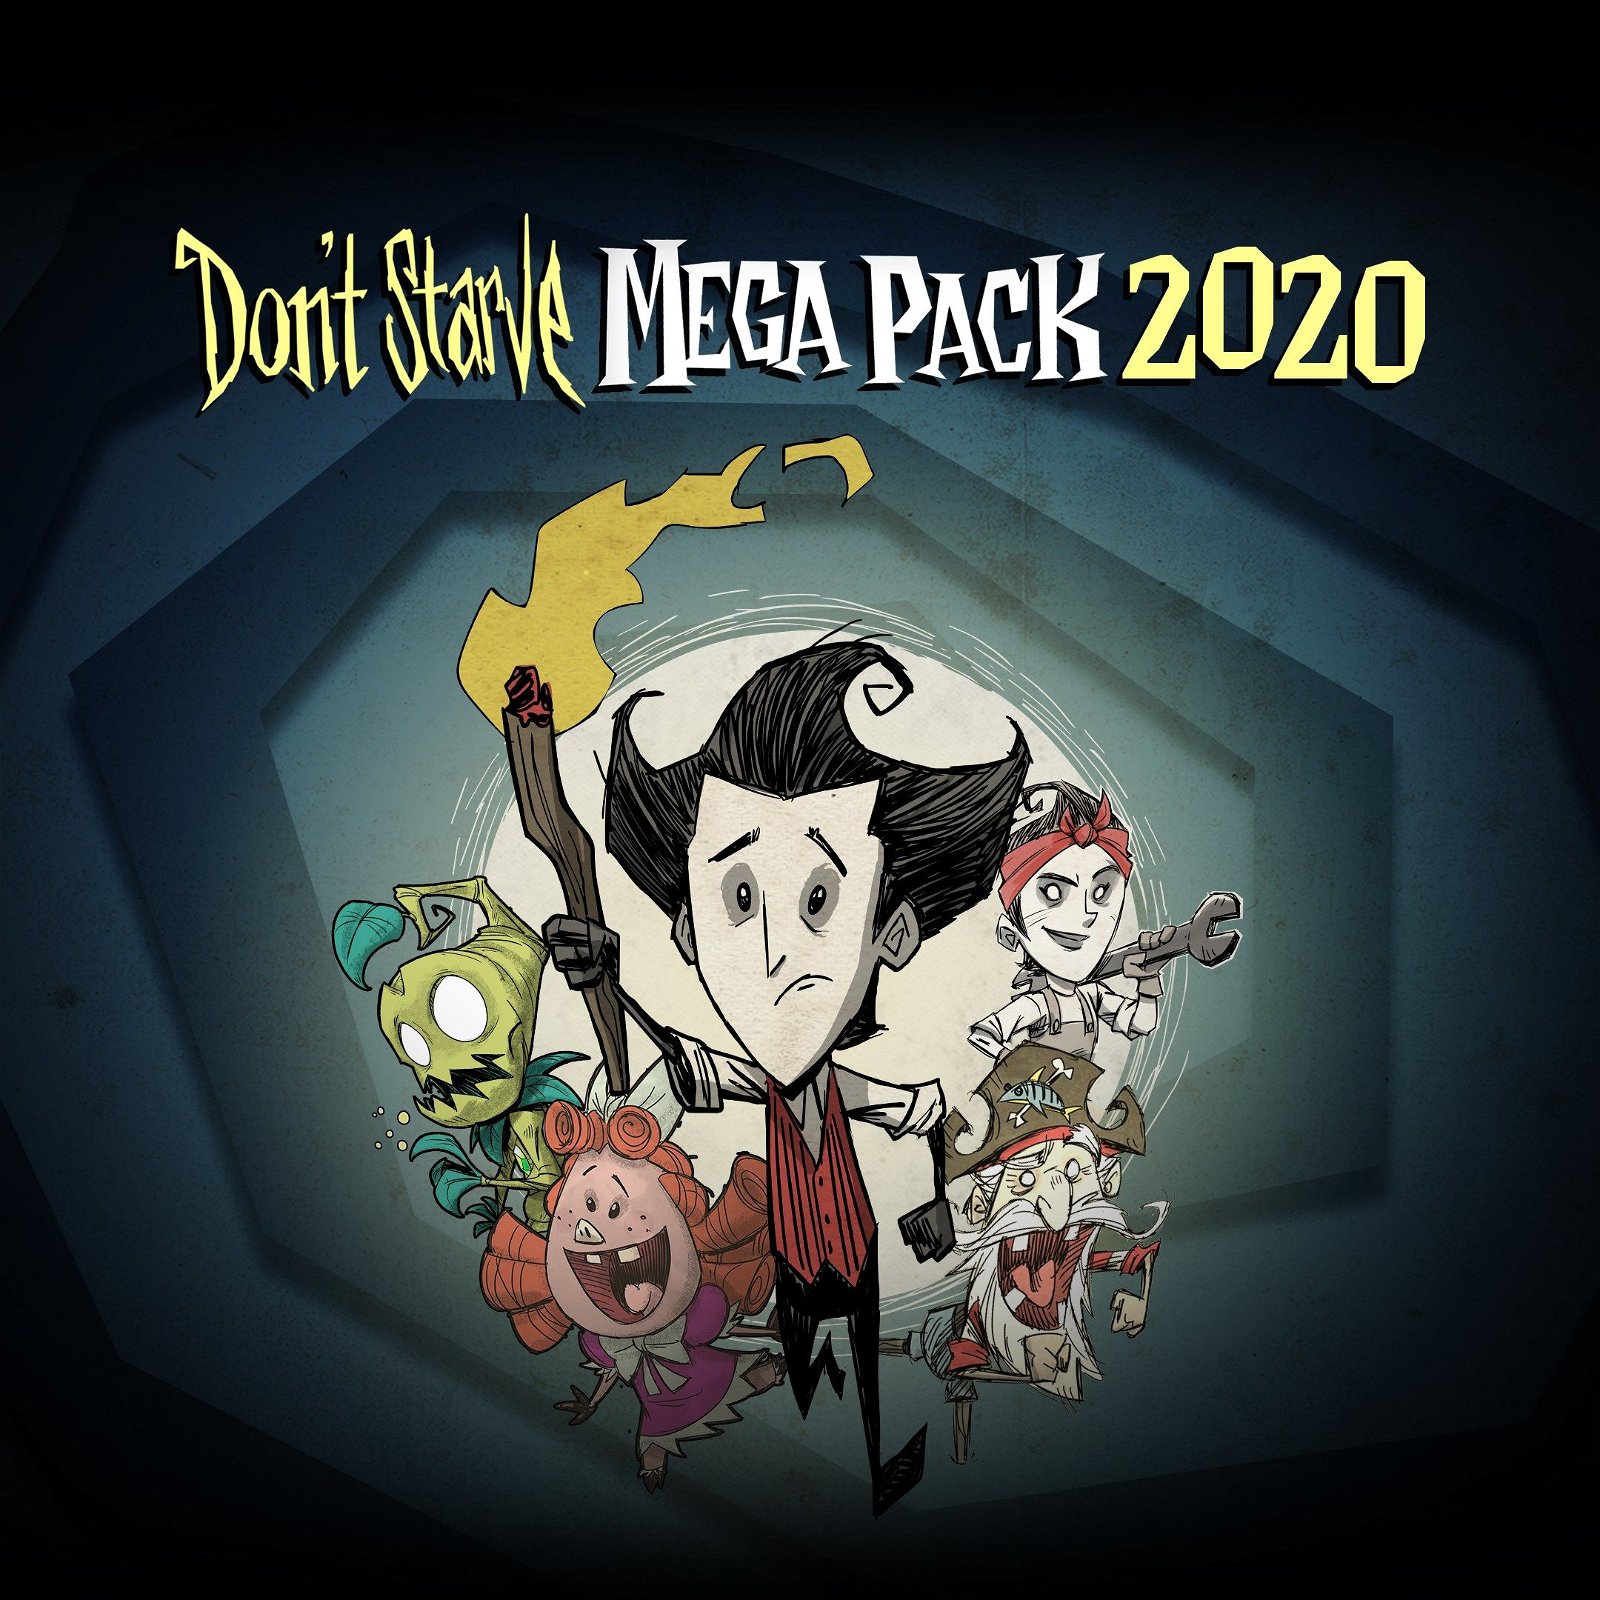 Image of Don't Starve Mega Pack 2020